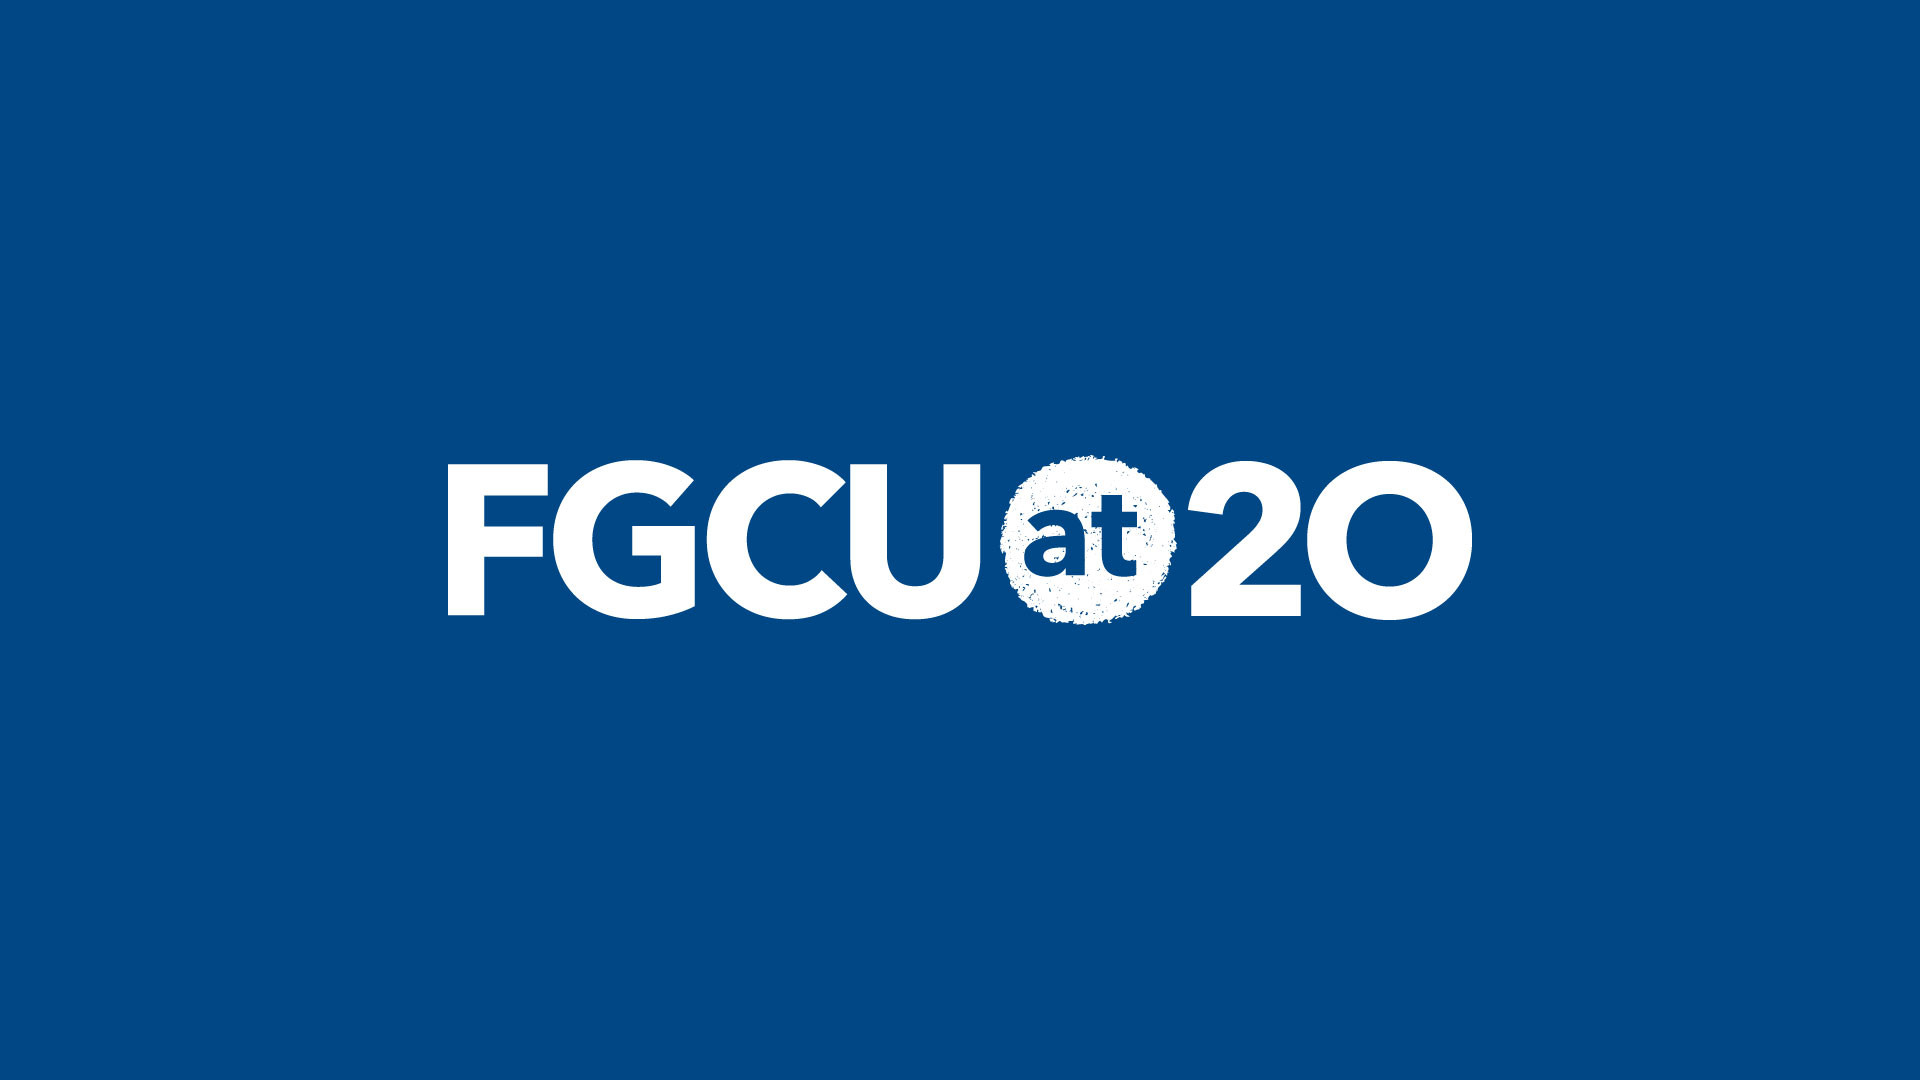 1920x1080 FGCU at 20 Logo Background